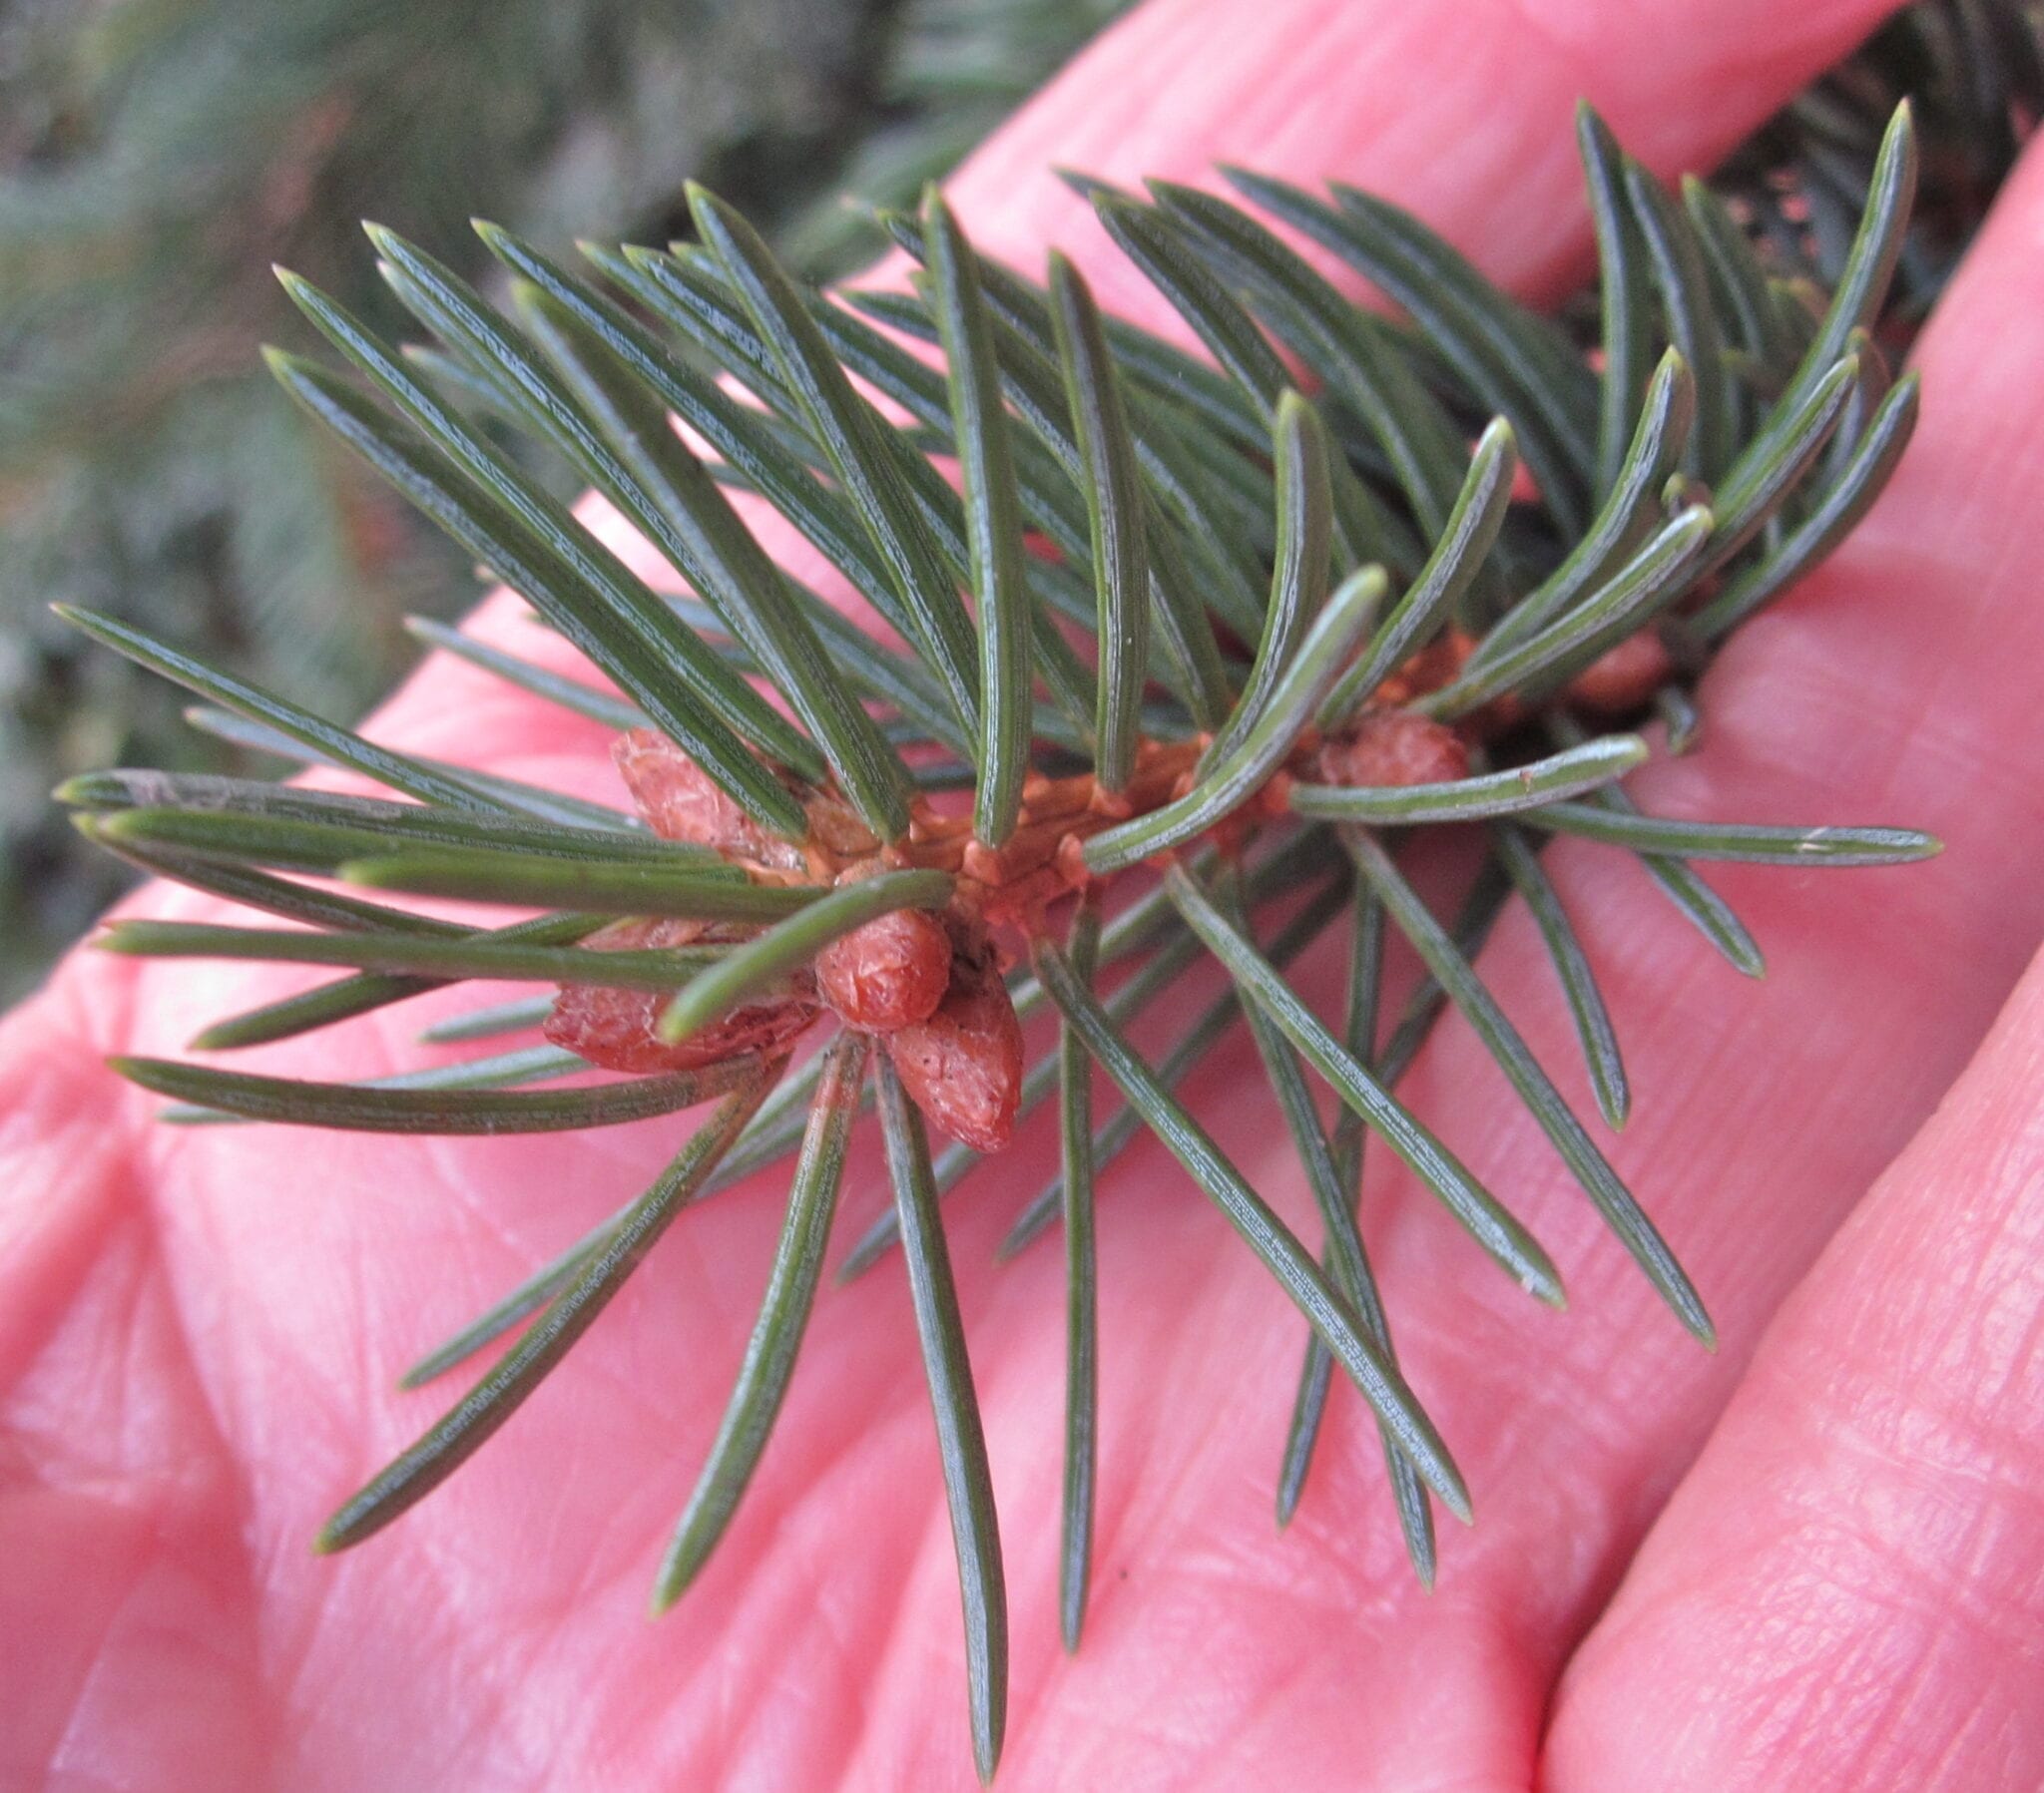 Norway Spruce needles